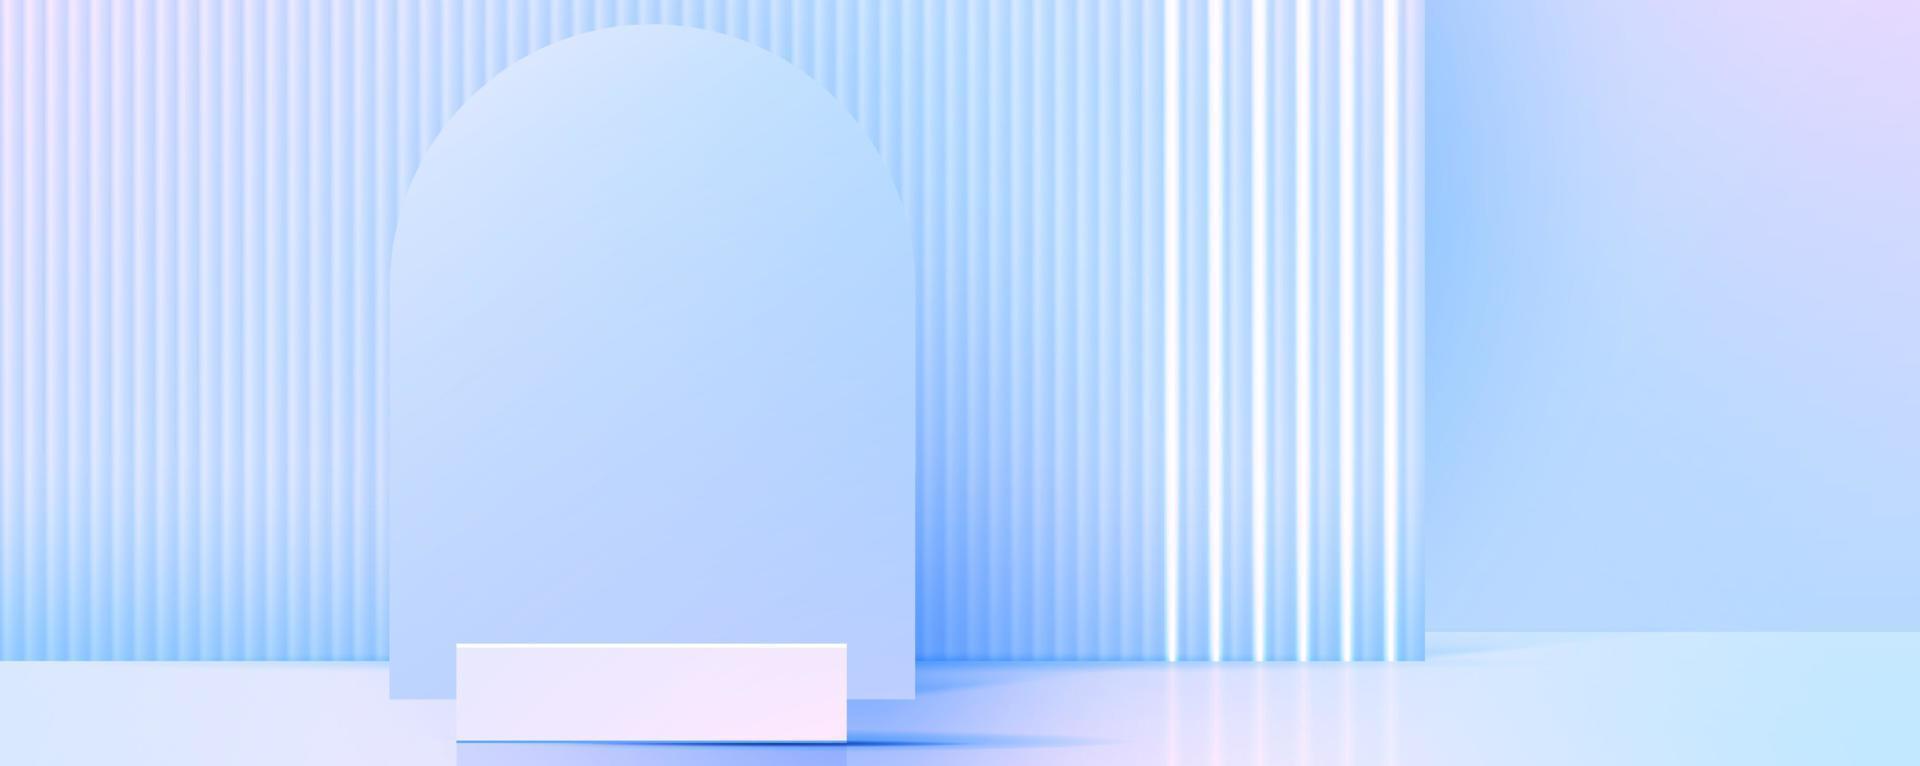 monitor podio o estar con azul y rosado degradado para producto presentación en pastel colores habitación. mínimo estilo ideal para presentación producto plataforma, anuncio publicitario, paquete demostración. vector. vector